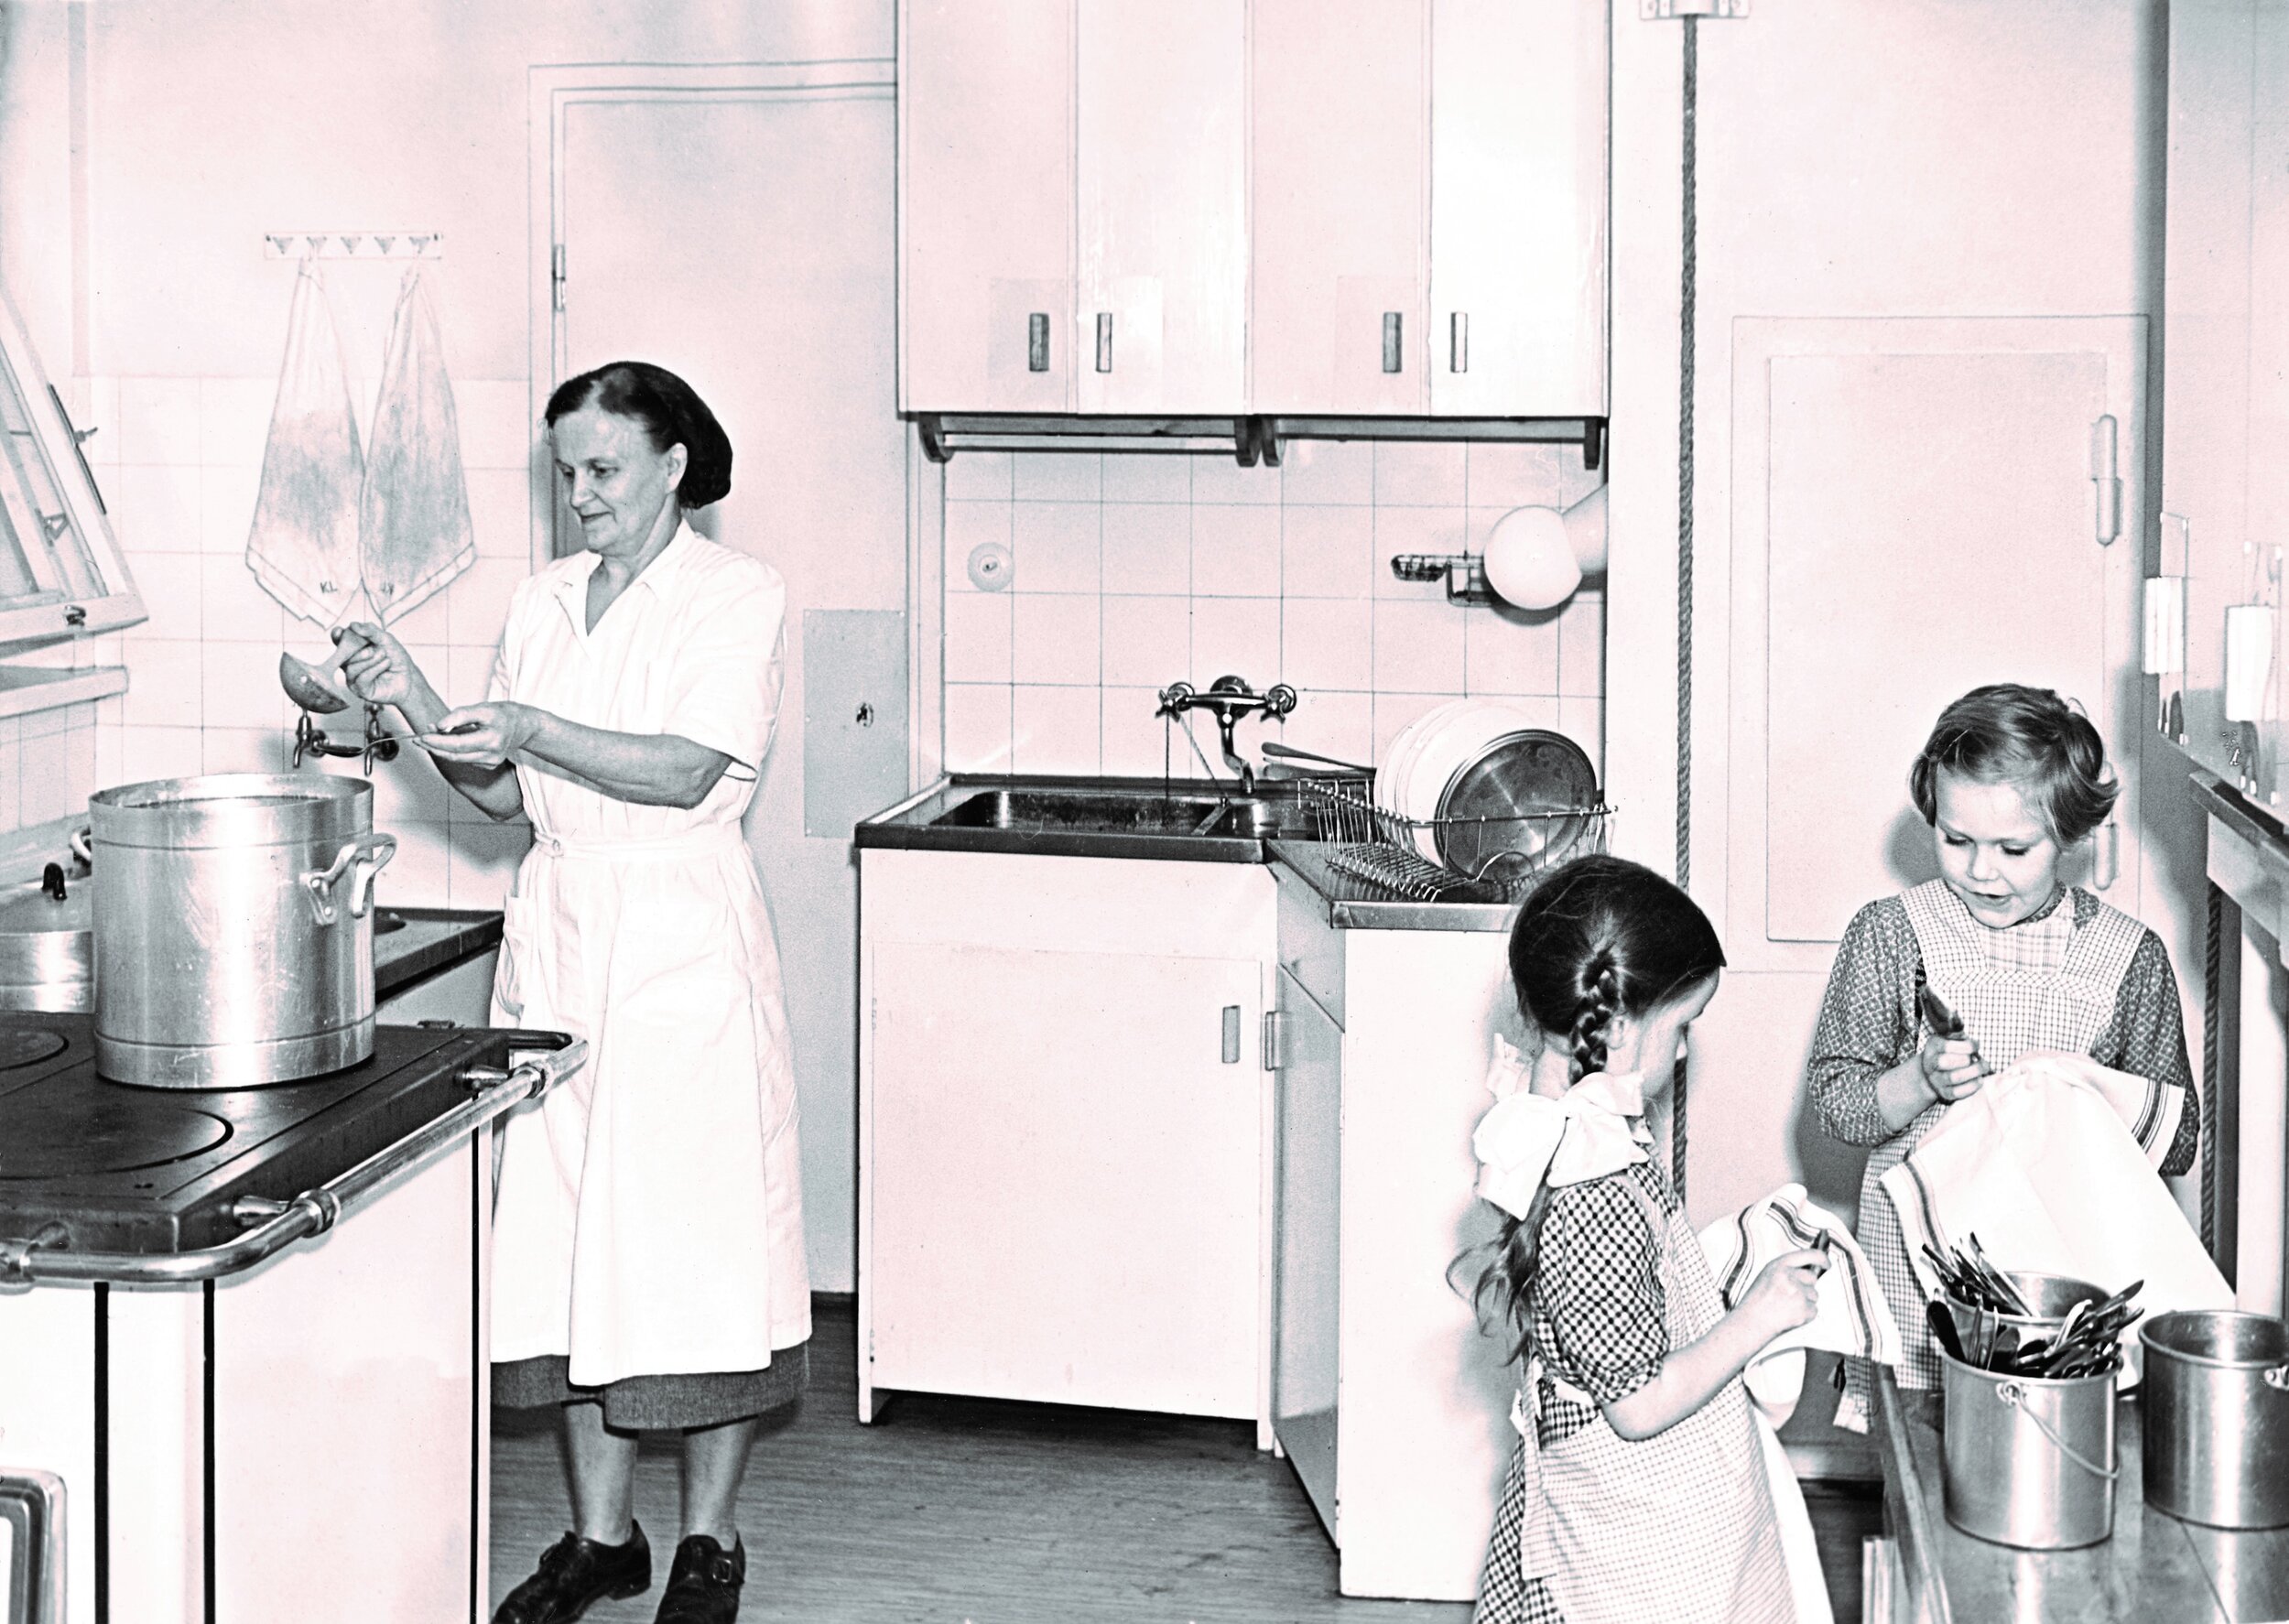 Kuva 2. Ryhmän lapset työskentelevät pöytien ääressä yhdessä huoneessa aikuisten valvonnan alla vuonna 1954. Kuva: Lastentarhamuseon kuvakokoelma.